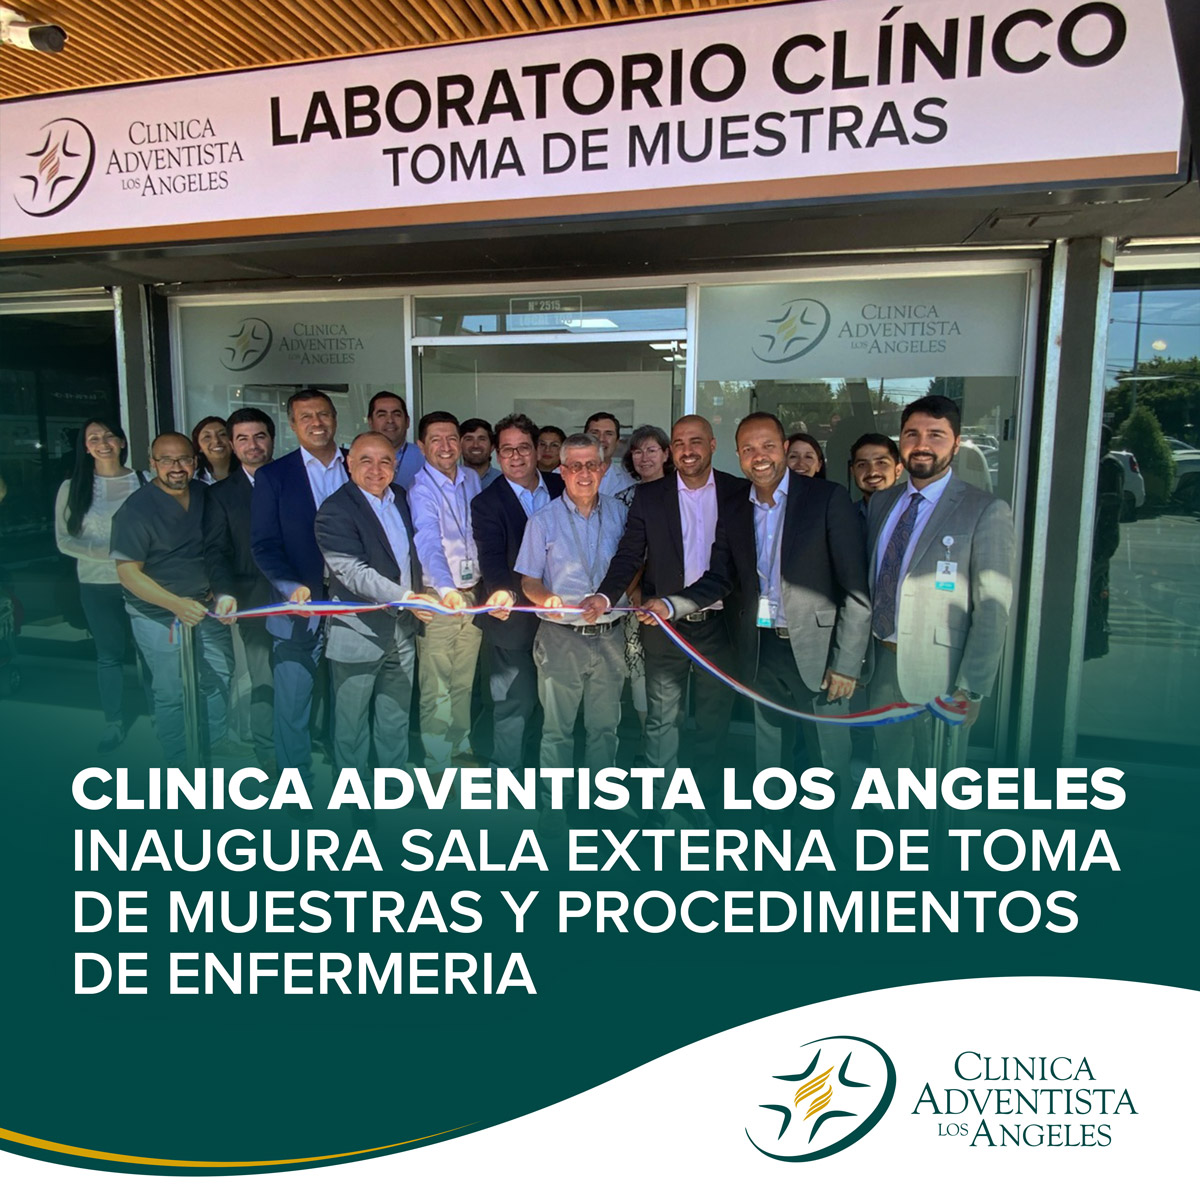 Clínica Adventista Los Ángeles - CLINALA - inaugura sala externa de toma de mu